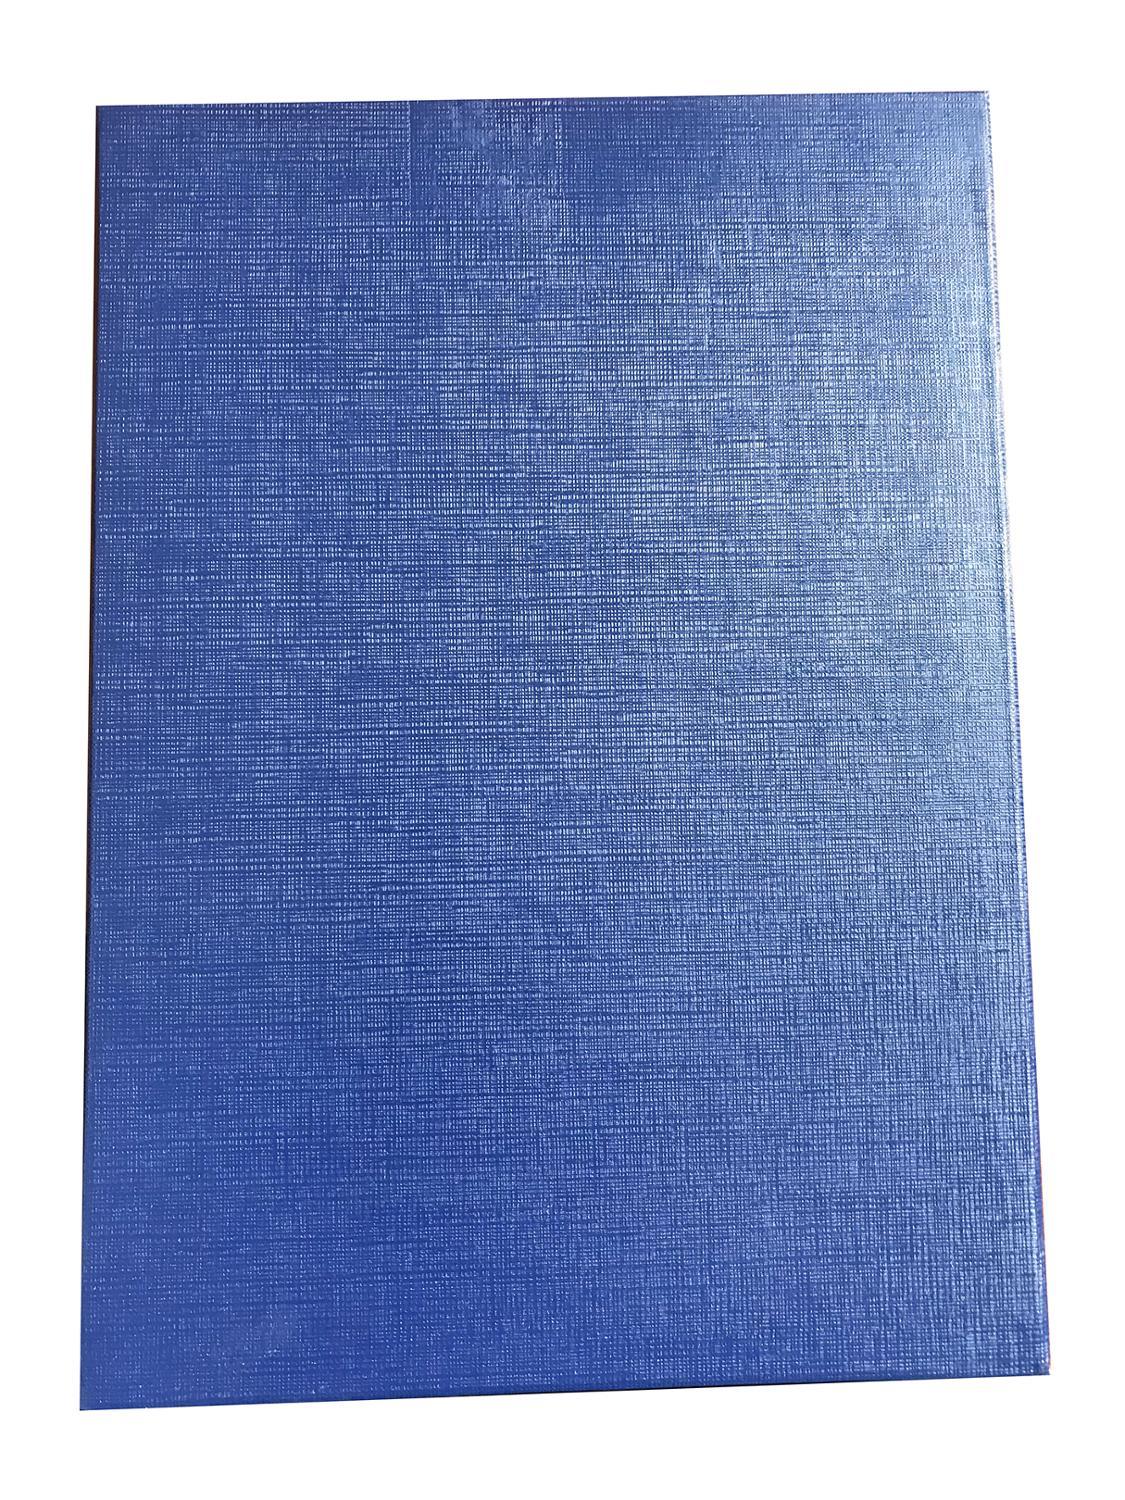 Изображение товара: Обложка диплома о среднем профессиональном образовании. Гост 2014 года, цвет синий, размер официальный(обложка)